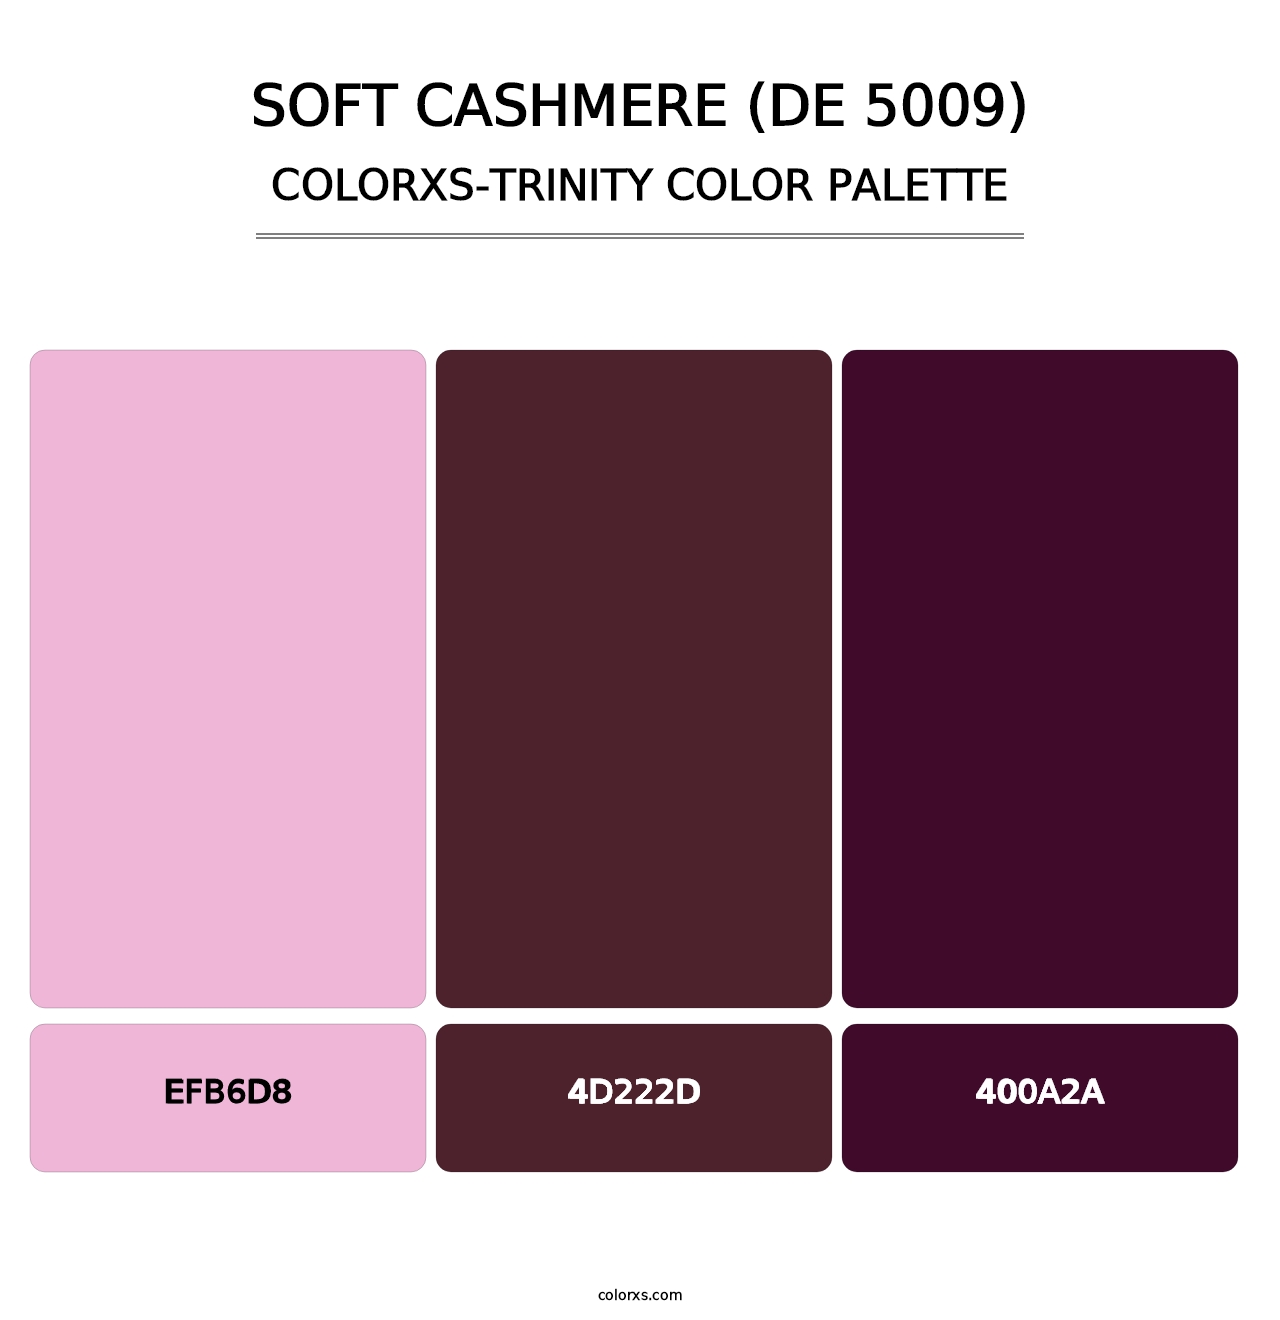 Soft Cashmere (DE 5009) - Colorxs Trinity Palette